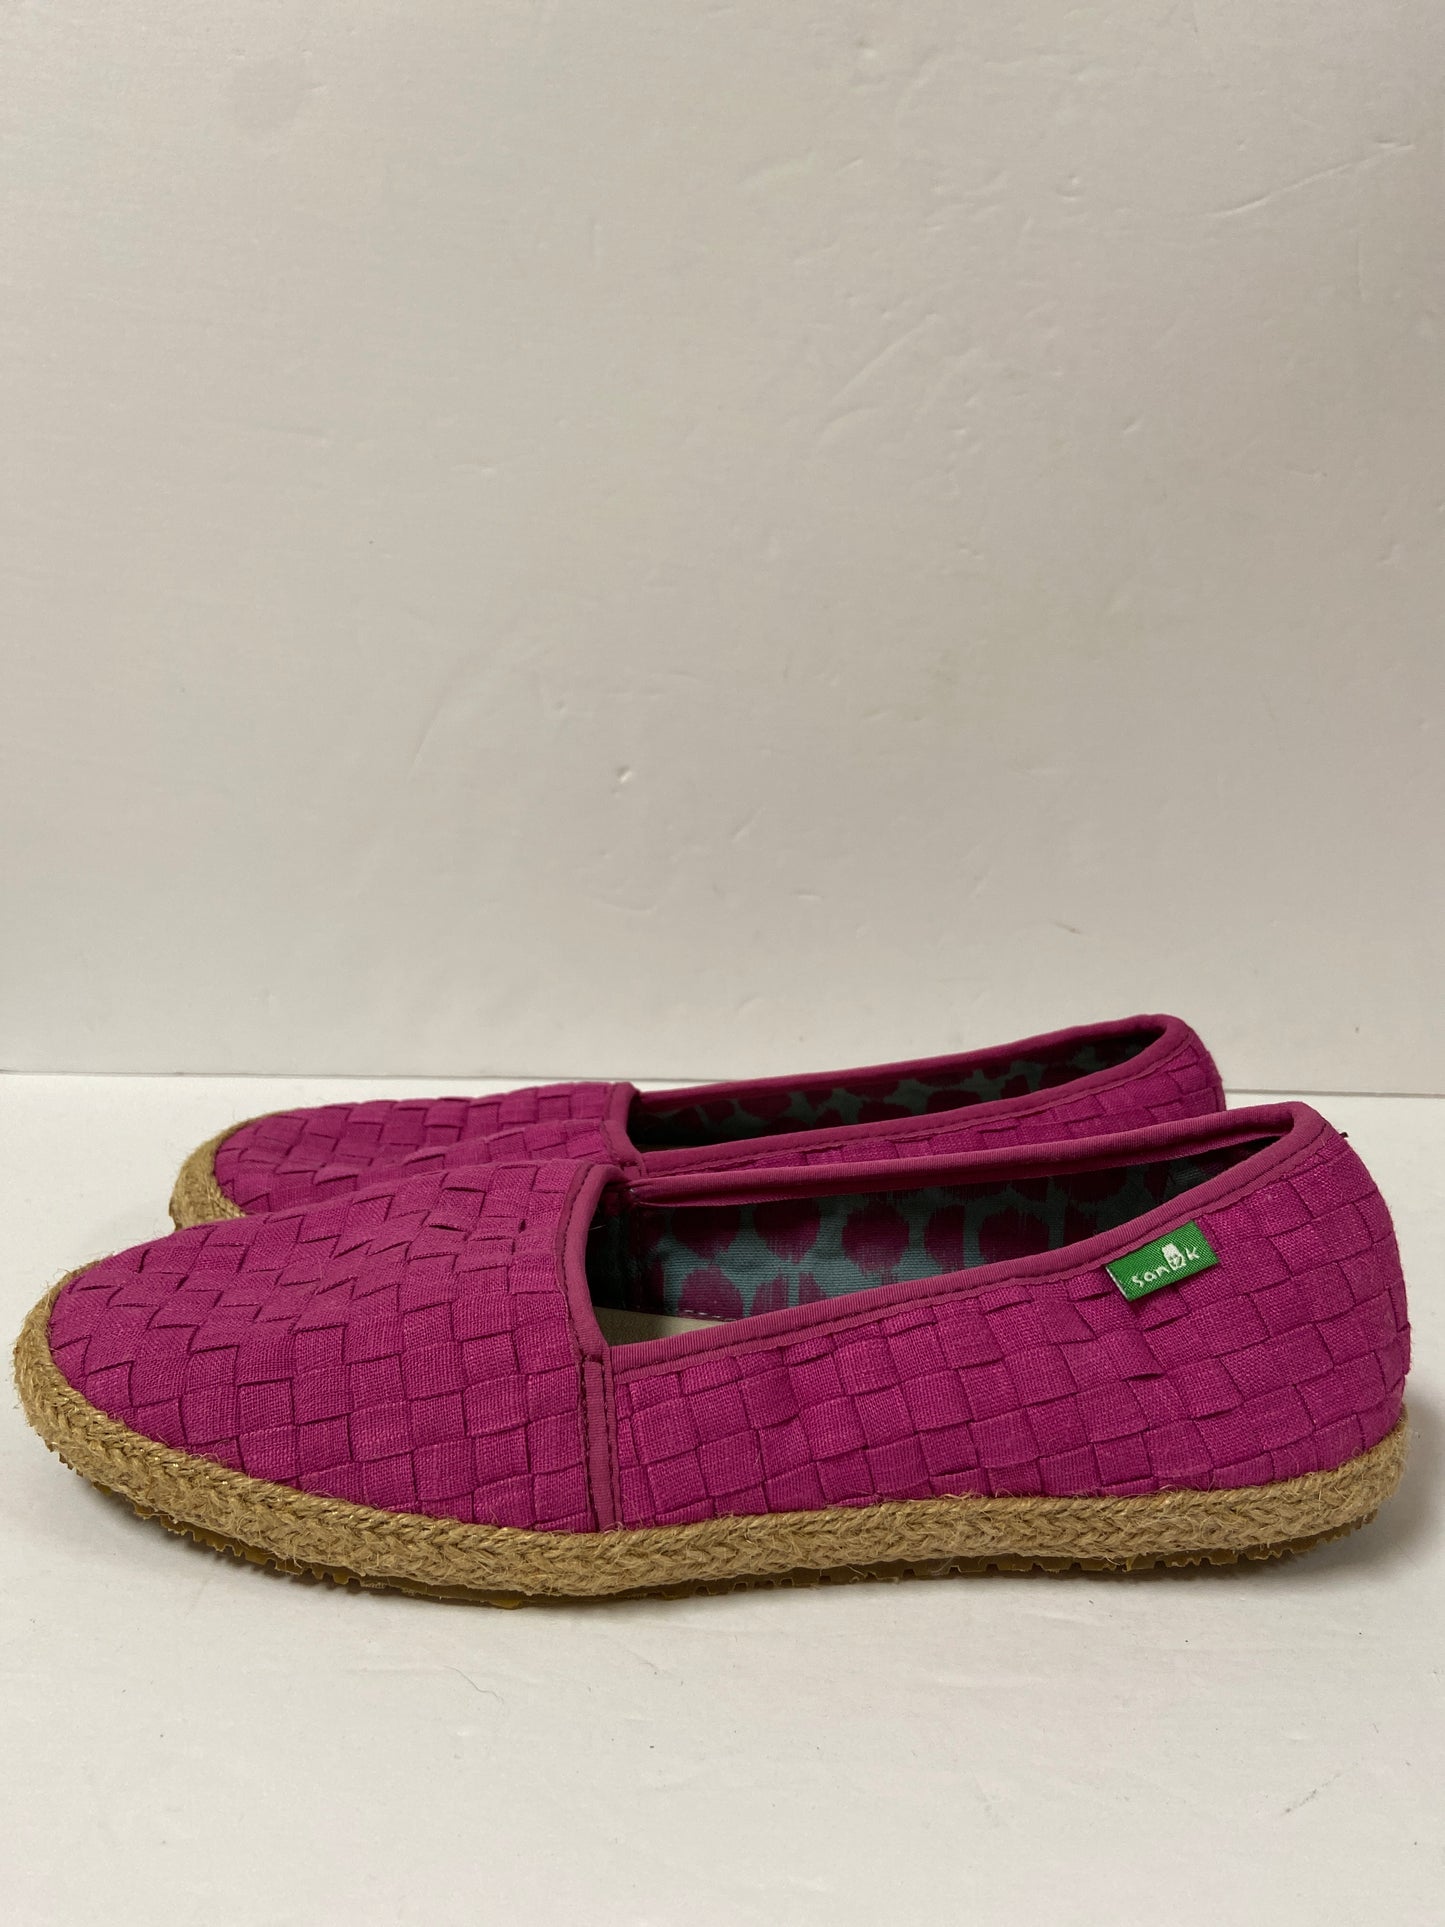 Shoes Flats Espadrille By Sanuk  Size: 8